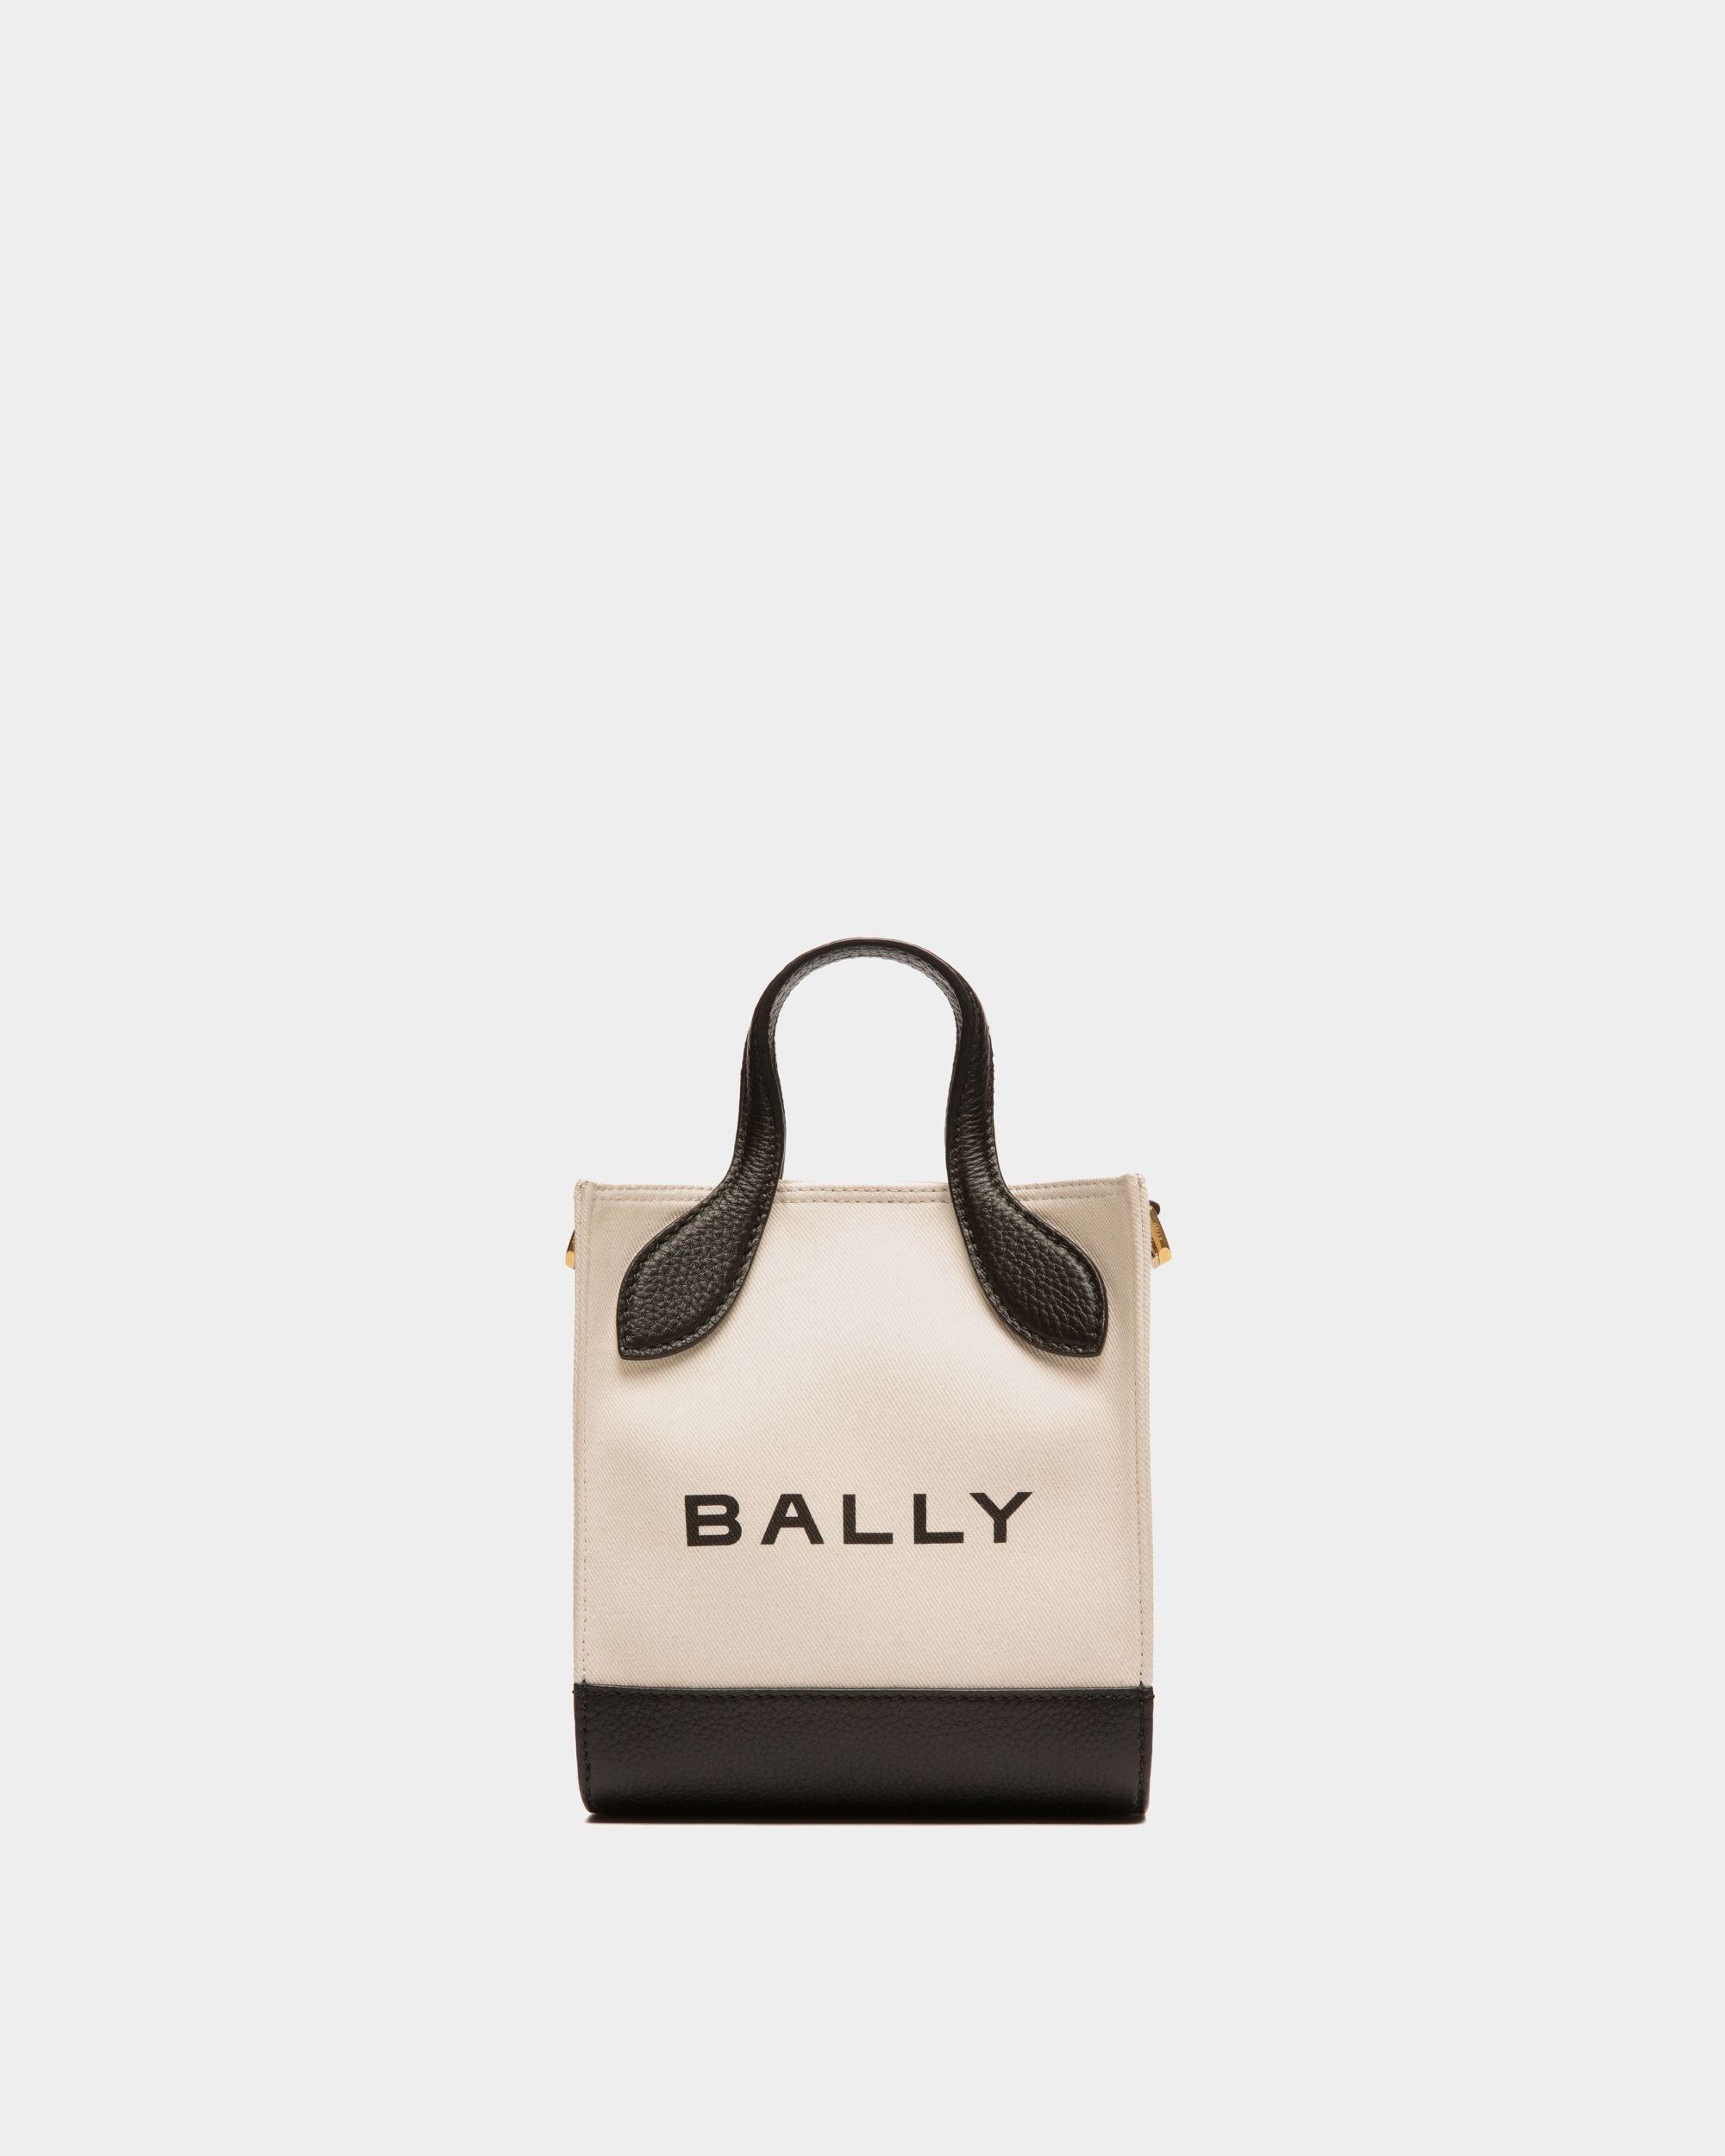 Bar | Mini sac cabas pour femme en toile et cuir neutre et noir | Bally | Still Life Devant